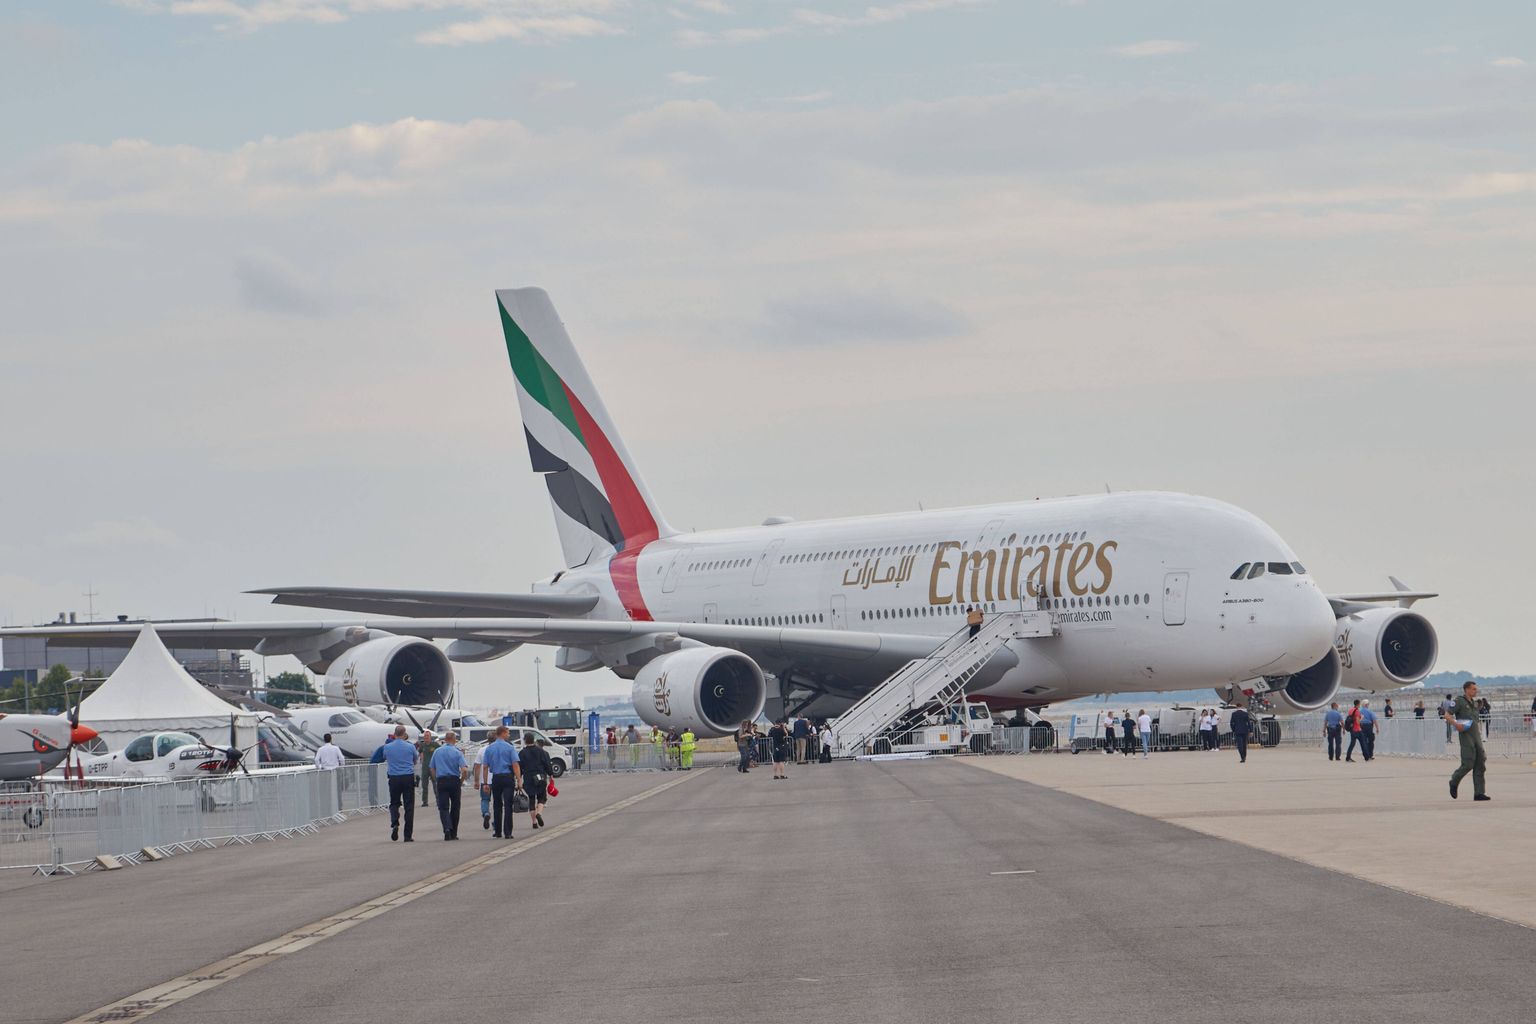 Emiratesi lennuk Airbus A380 juunis Berliinis. Foto on illustratiivne.